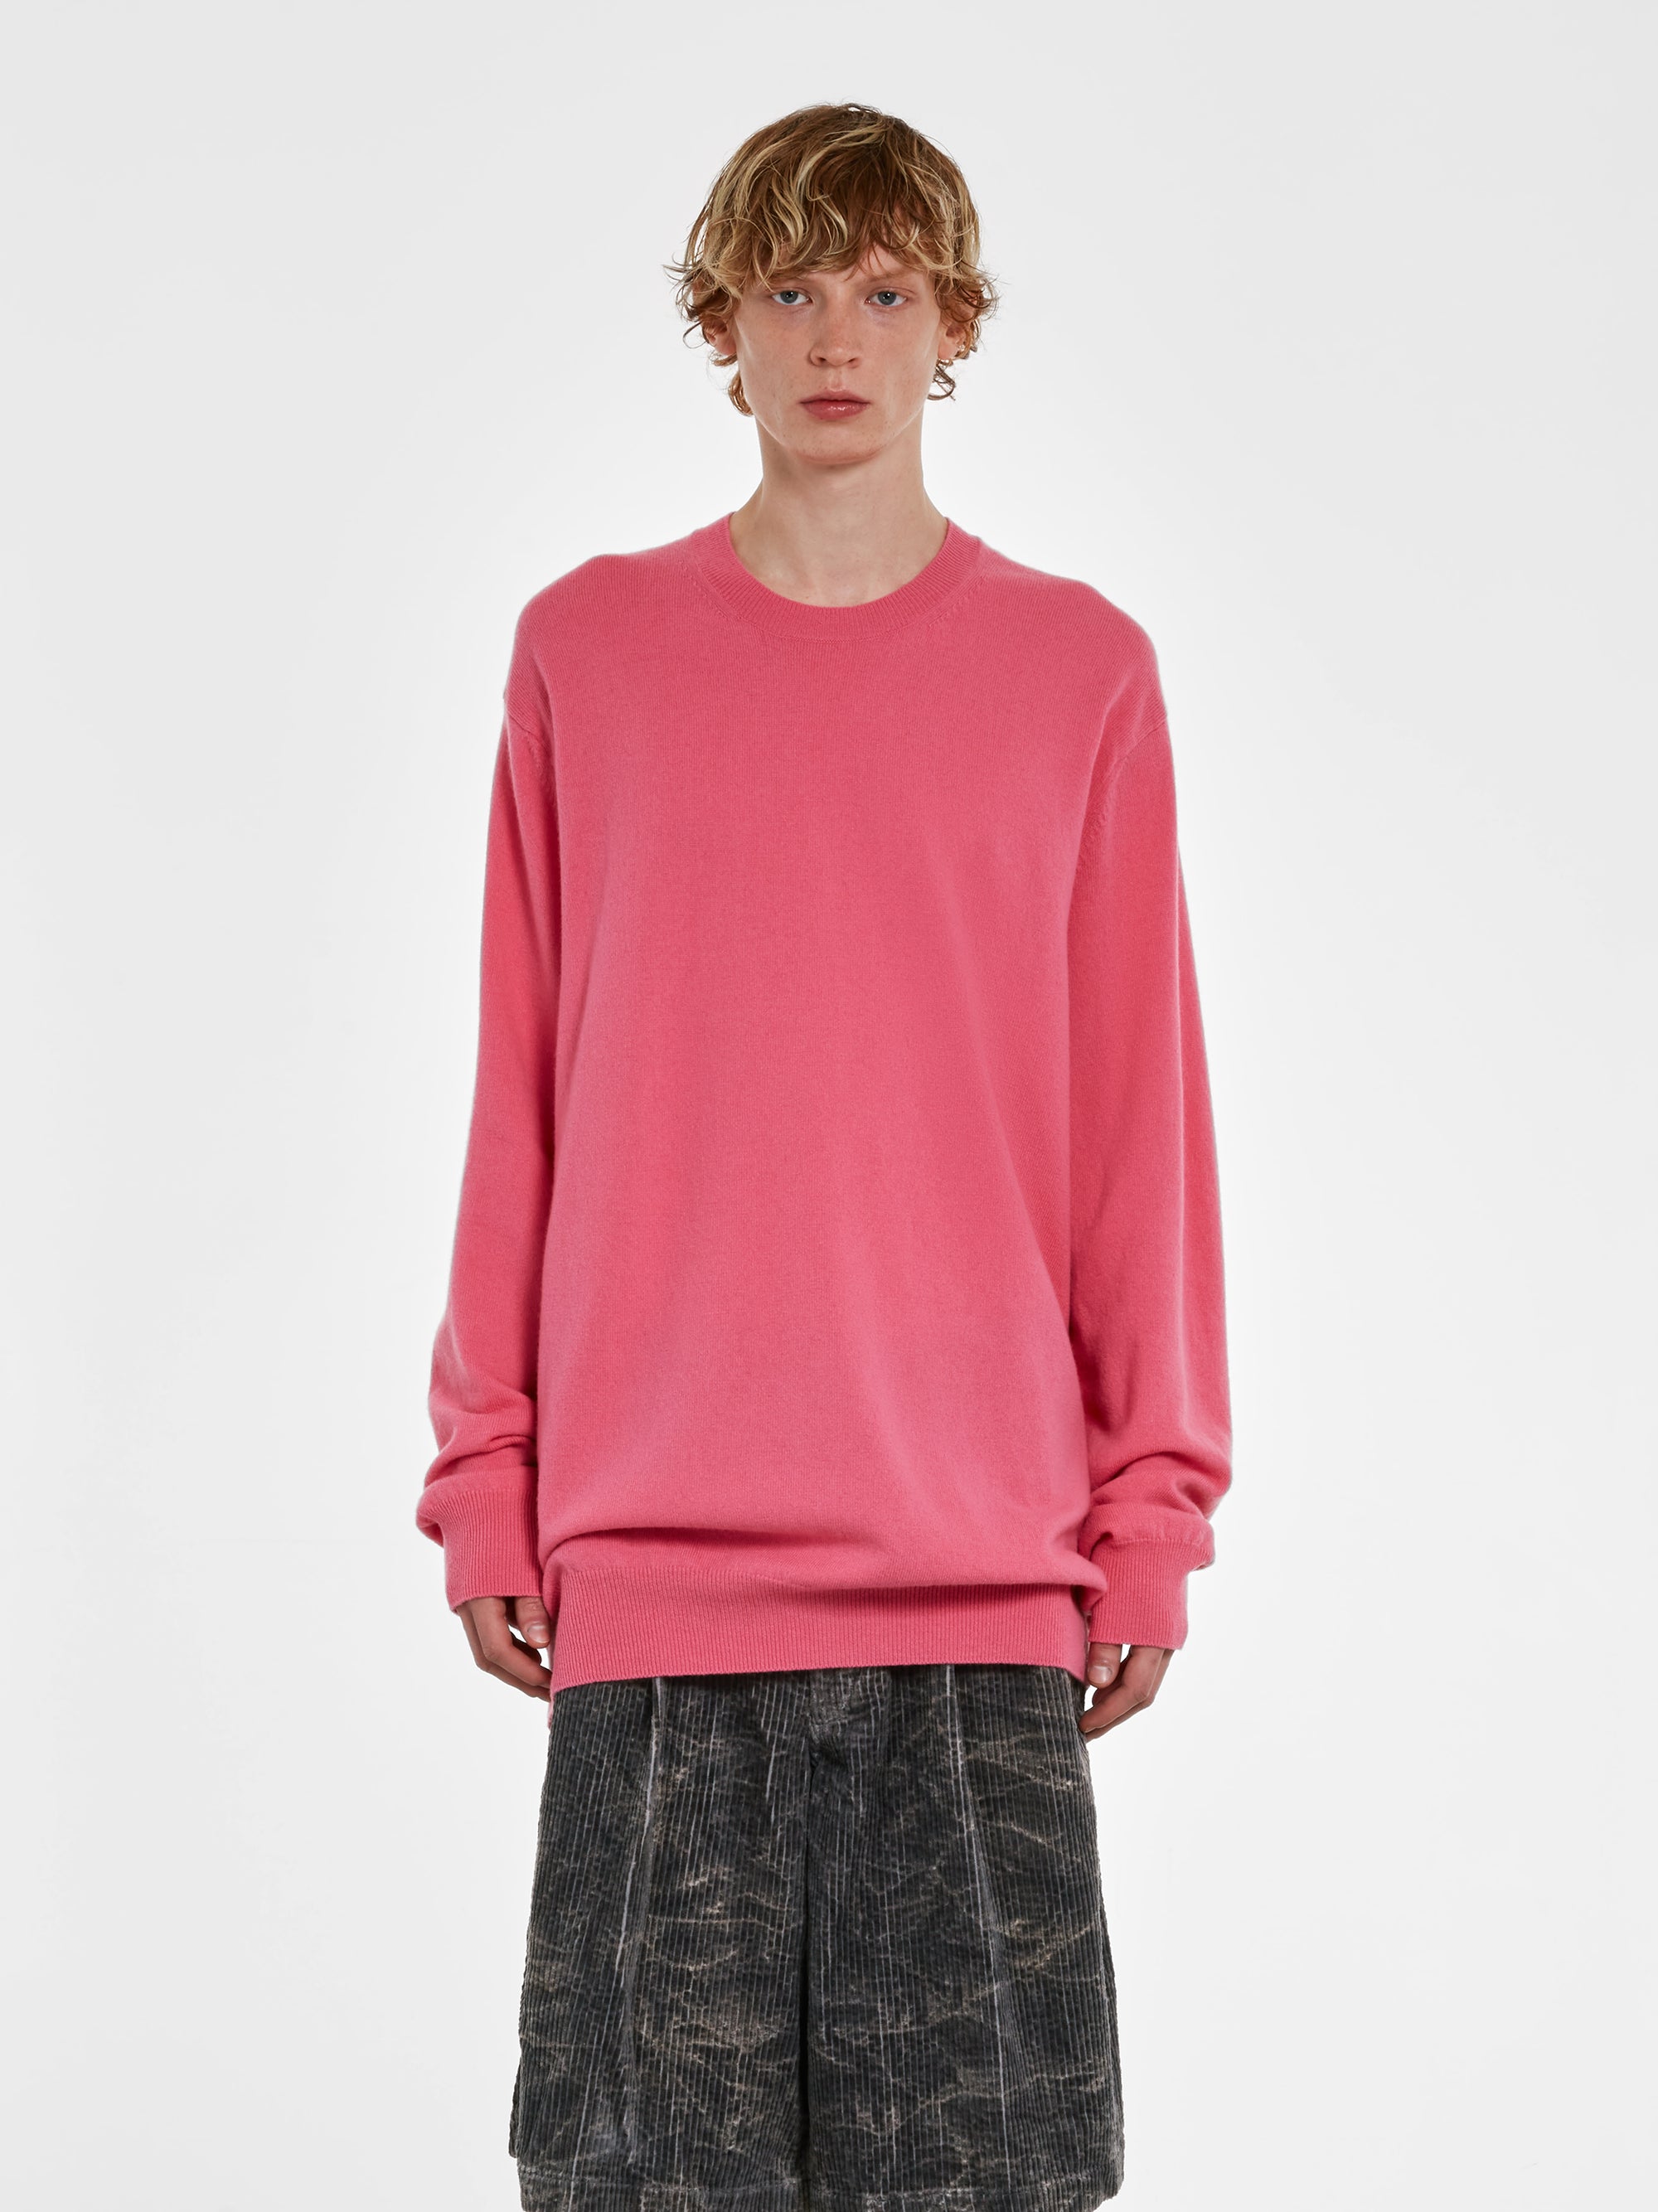 CDG Shirt - Men's Wool Sweater - (Pink) view 1